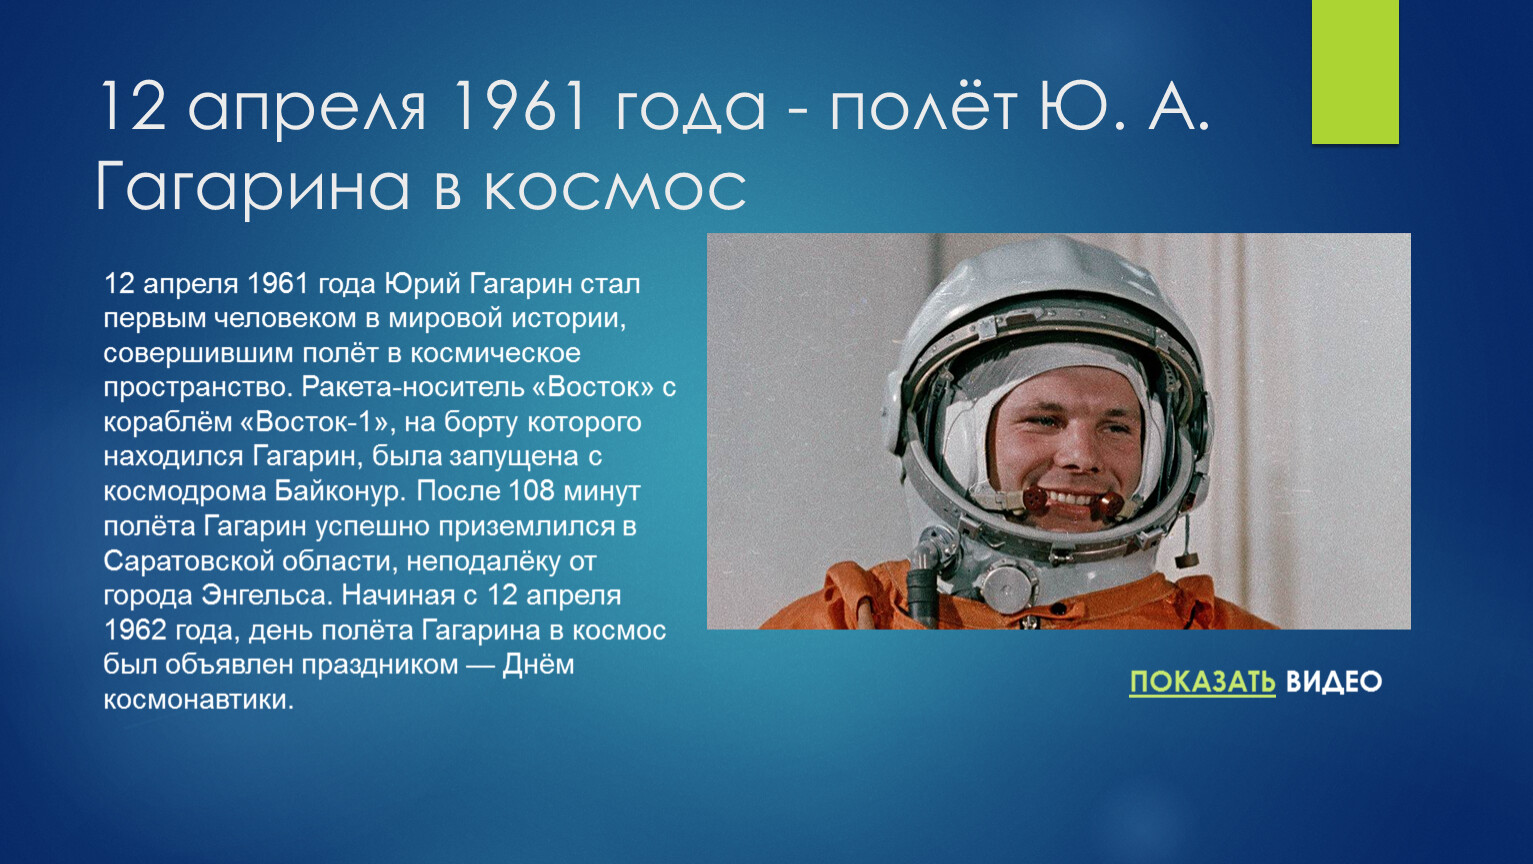 Первый полет человека в космос год день. Первый полет человека в космос (ю. а. Гагарин). 1961 Полет ю.а Гагарина в космос. Гагарин 12 апреля 1961 года.